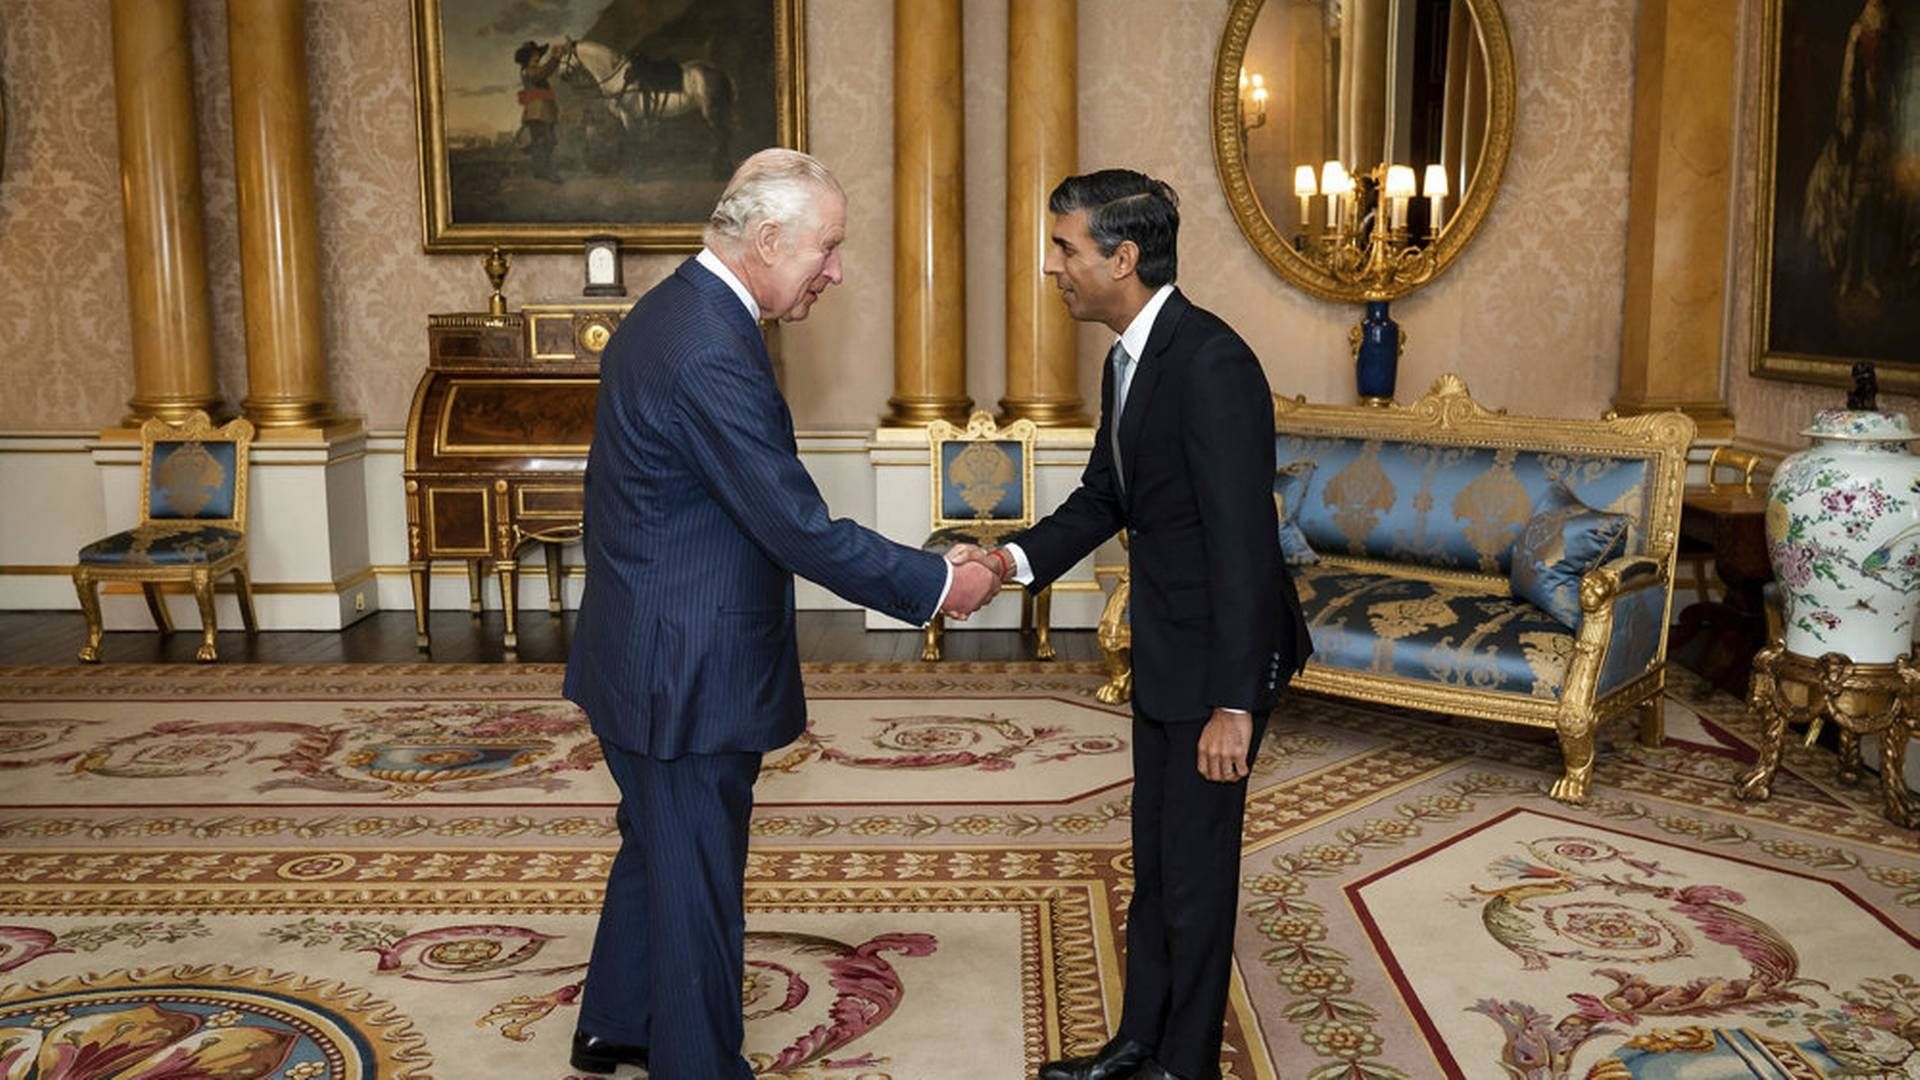 Efter et møde med den britiske kong Charles er Rishi Sunak udnævnt som Storbritanniens nye premierminister. Foto: Aaron Chown/Ritzau Scanpix